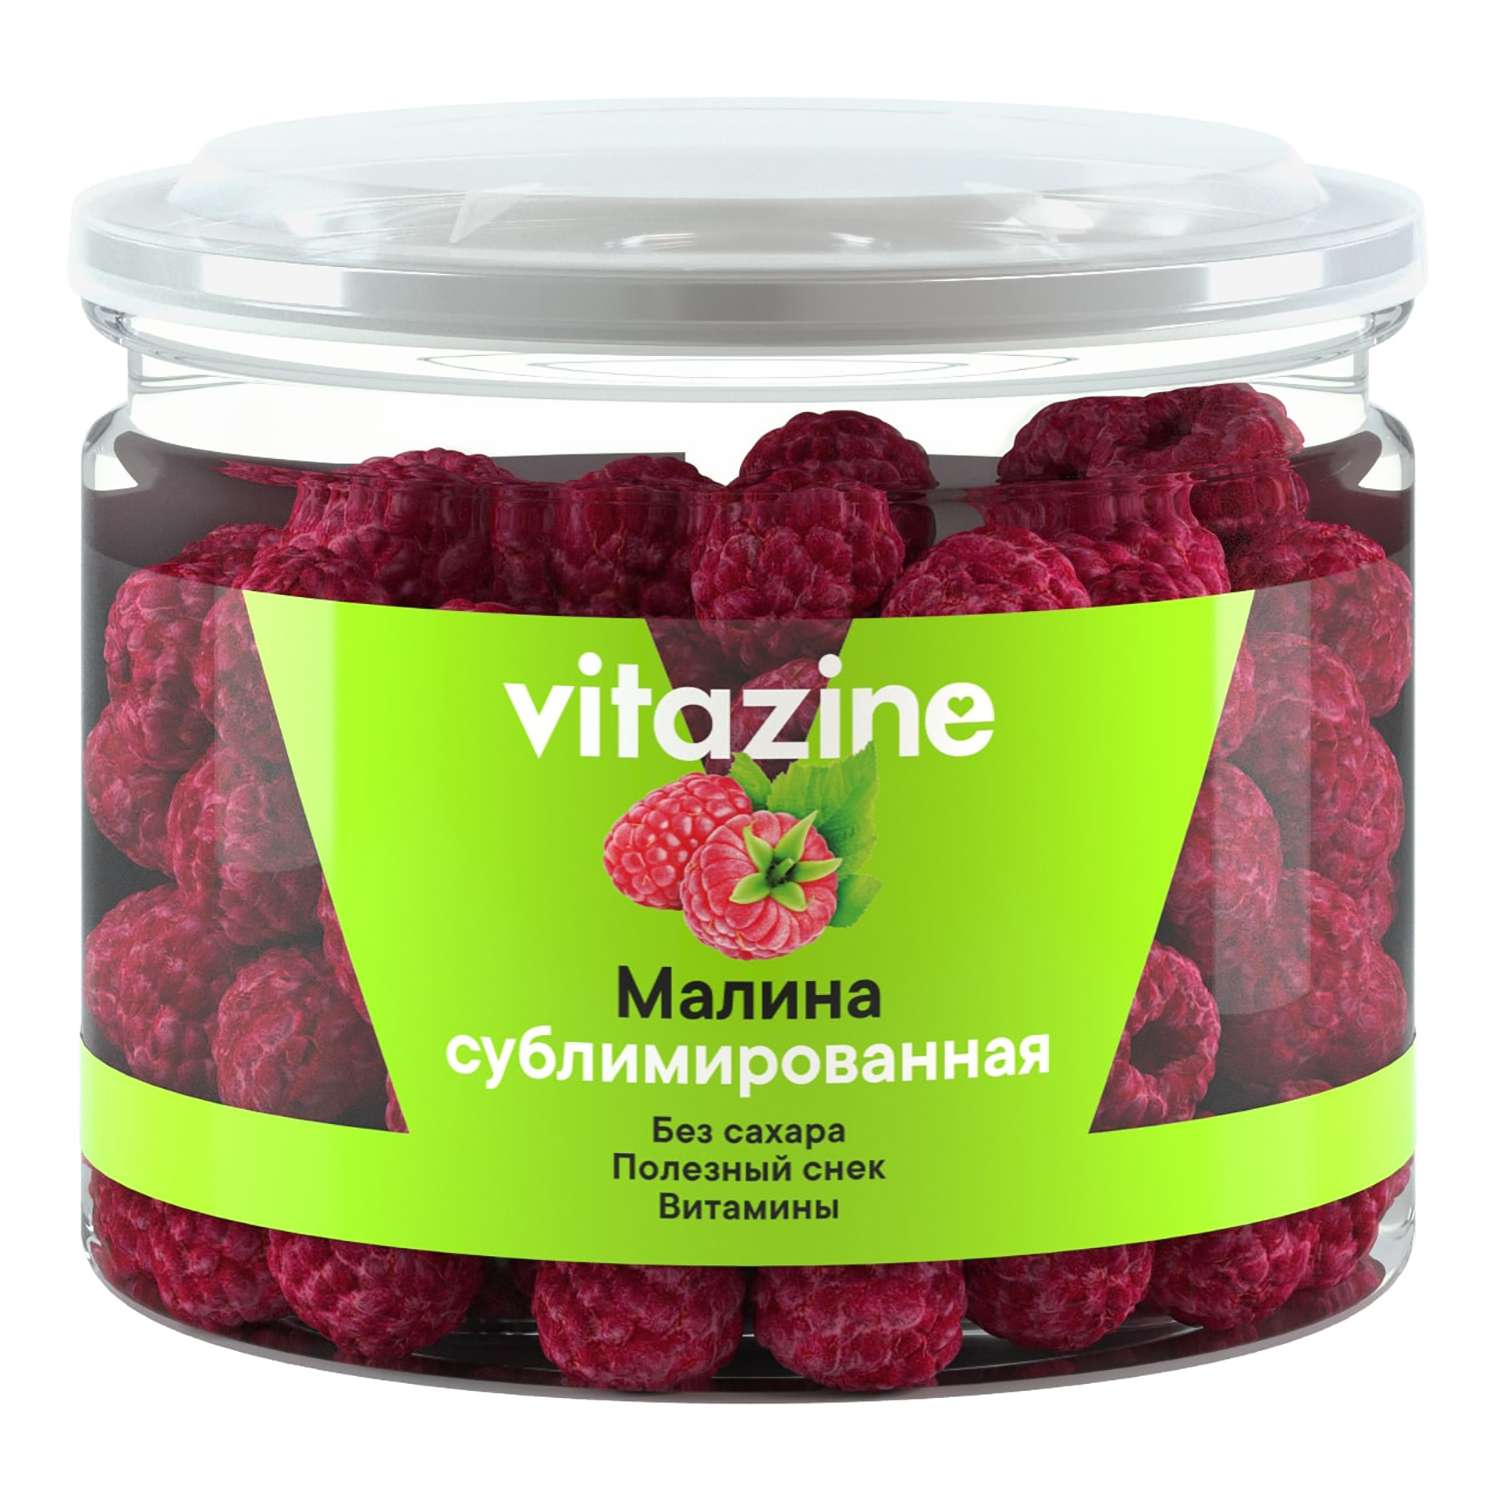 Малина Vitazine сублимированная целые ягоды 20г - фото 1